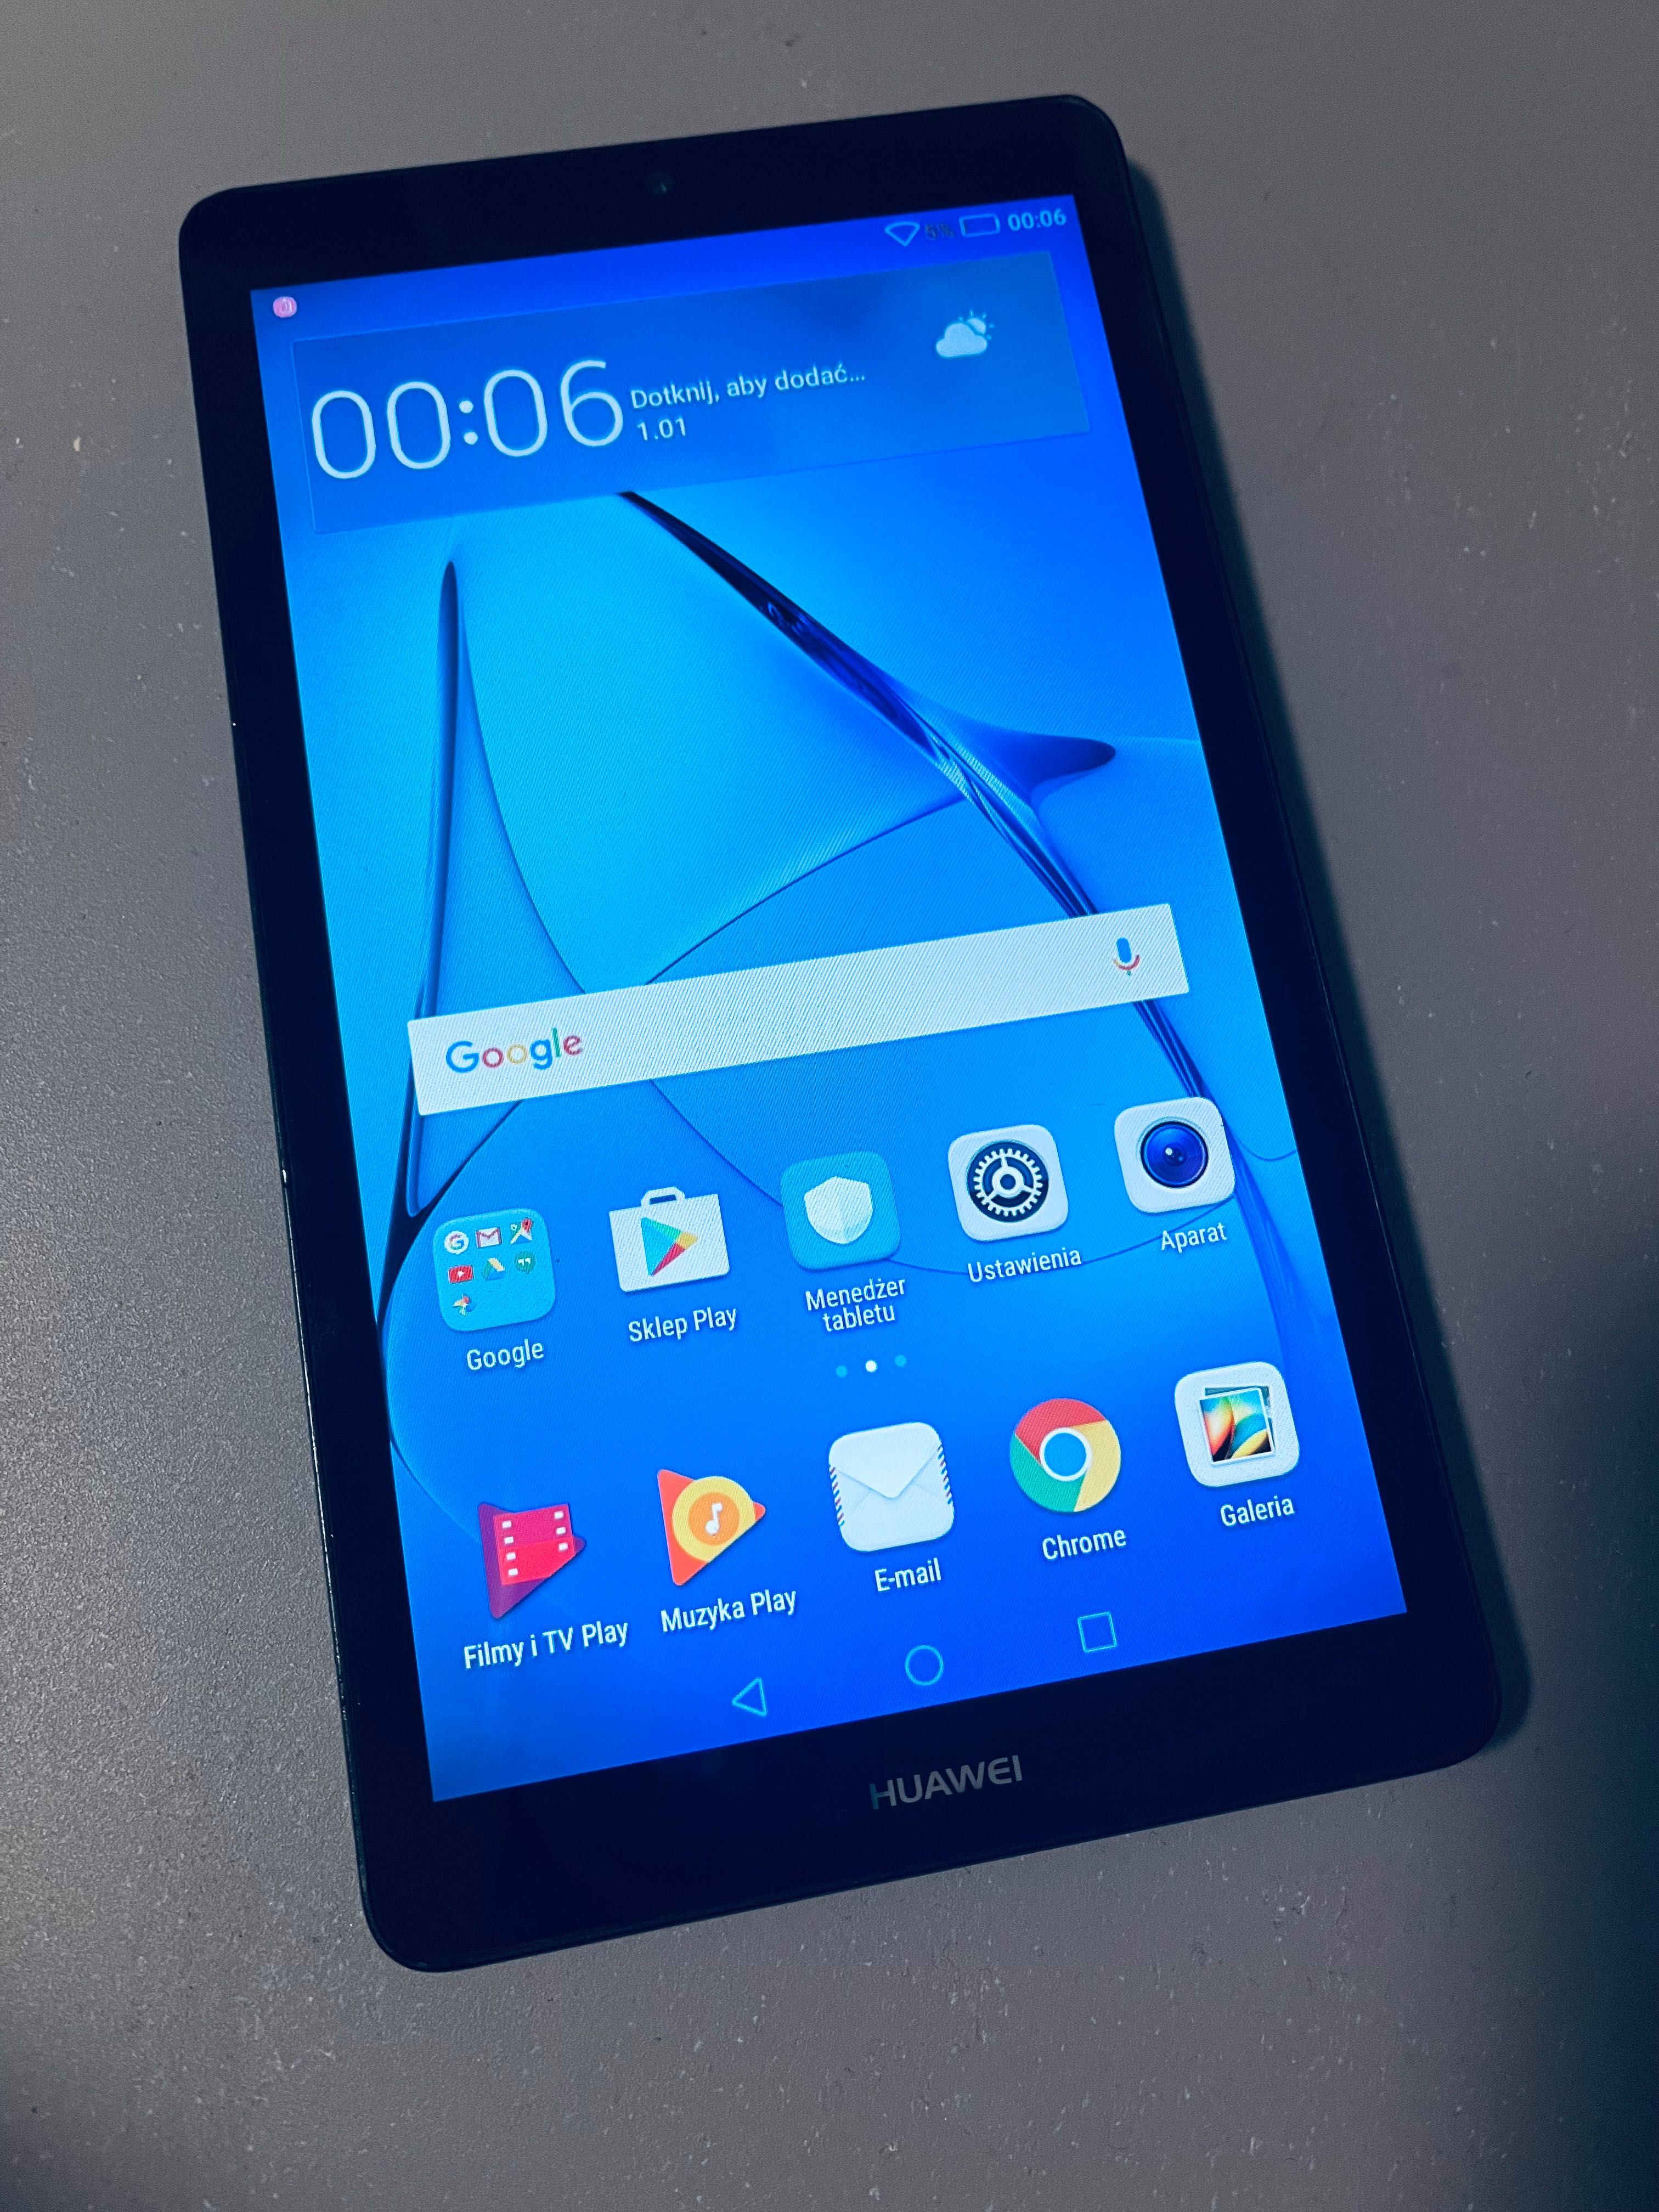 Tablet Huawei T3 7.0” WiFi sprawny